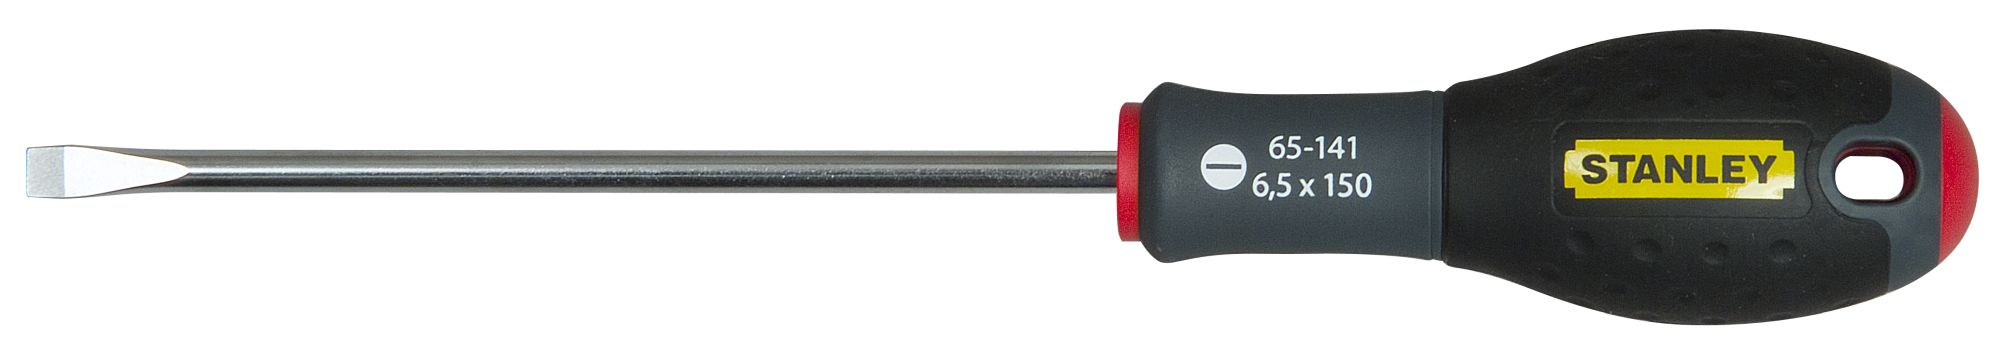 Destornillador FatMax®  6,5 X 150 mm SBD-0-65-141 | DESTORNILLADORES